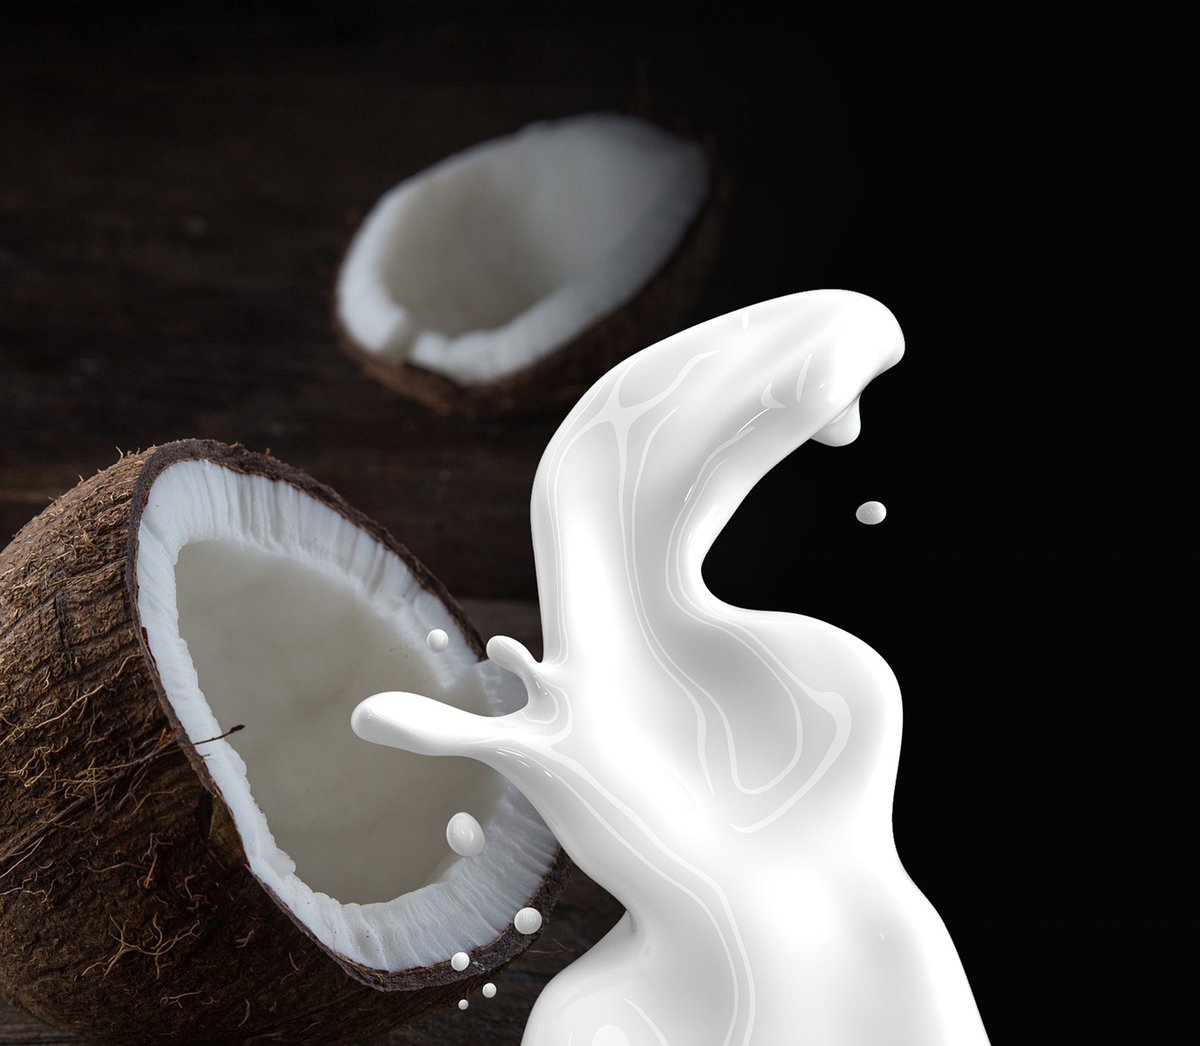 Splash of coconut milk in front of halved coconuts